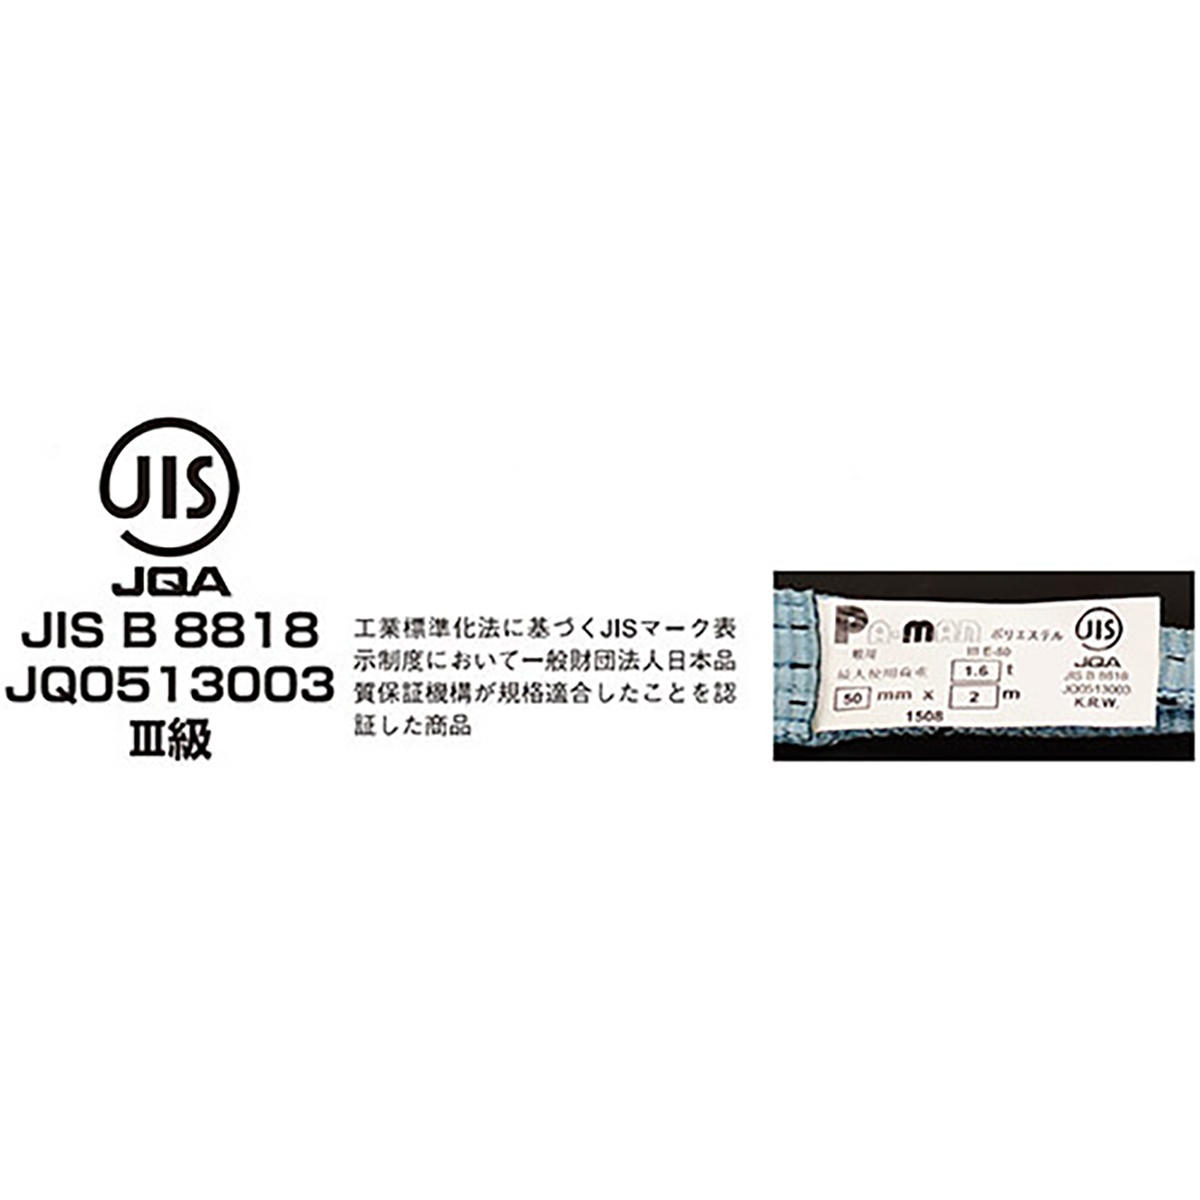 ポリベルトスリング JIS III級 ソフト面付 巾50mm 2.5m 1本